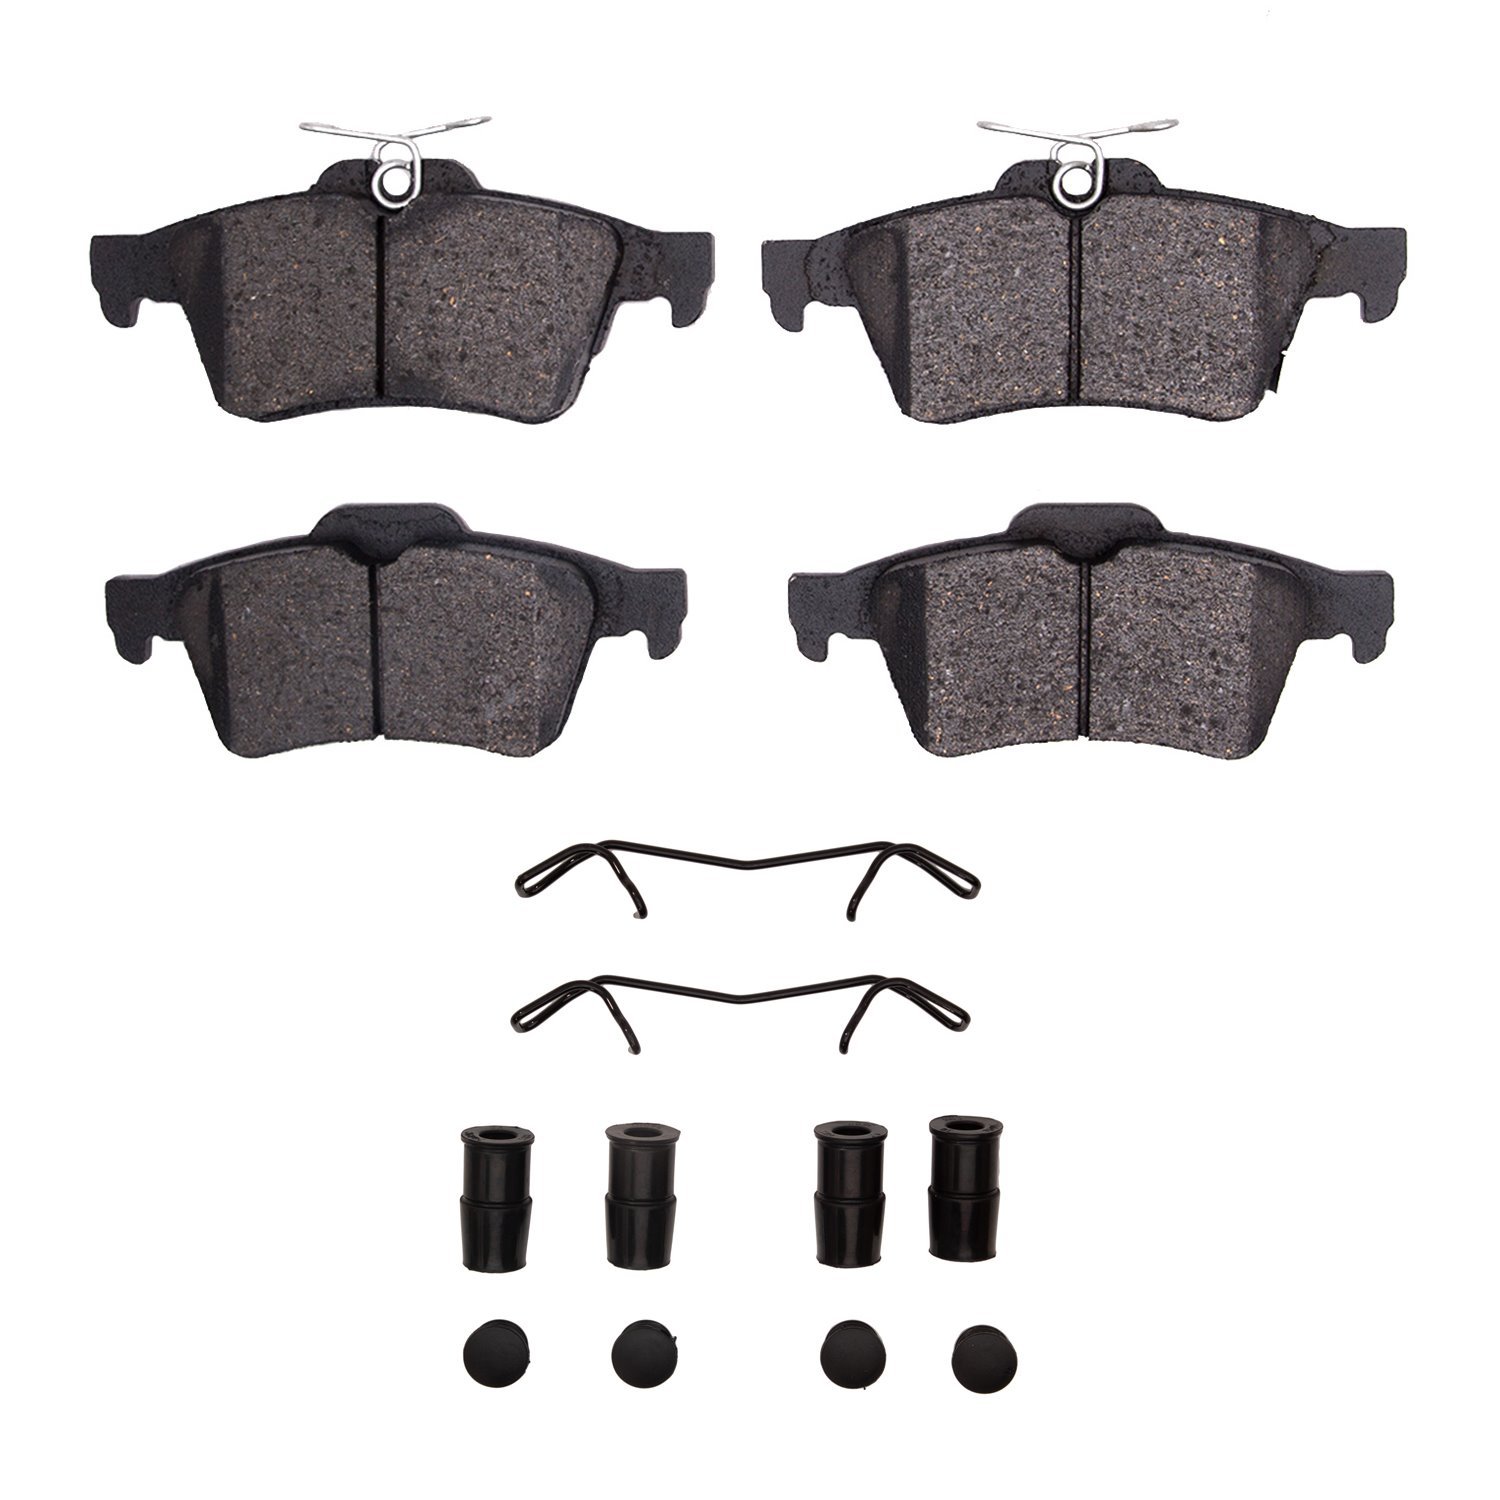 Ceramic Brake Pads & Hardware Kit, 2016-2018 Ford/Lincoln/Mercury/Mazda, Position: Rear